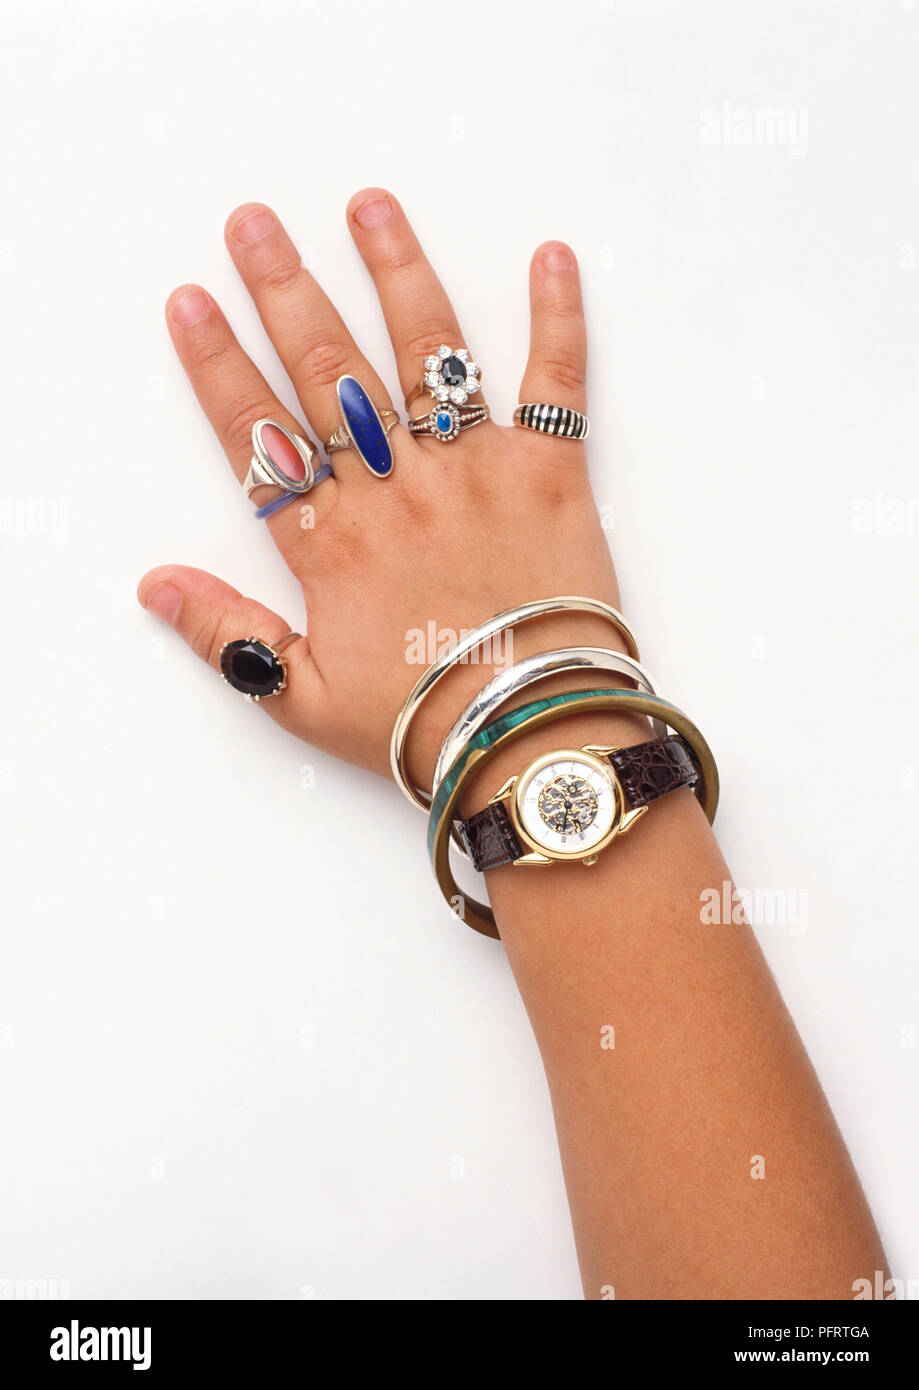 Die Mädchen Hand tragen viele Ringe, Armbänder und eine Uhr Stockfotografie  - Alamy